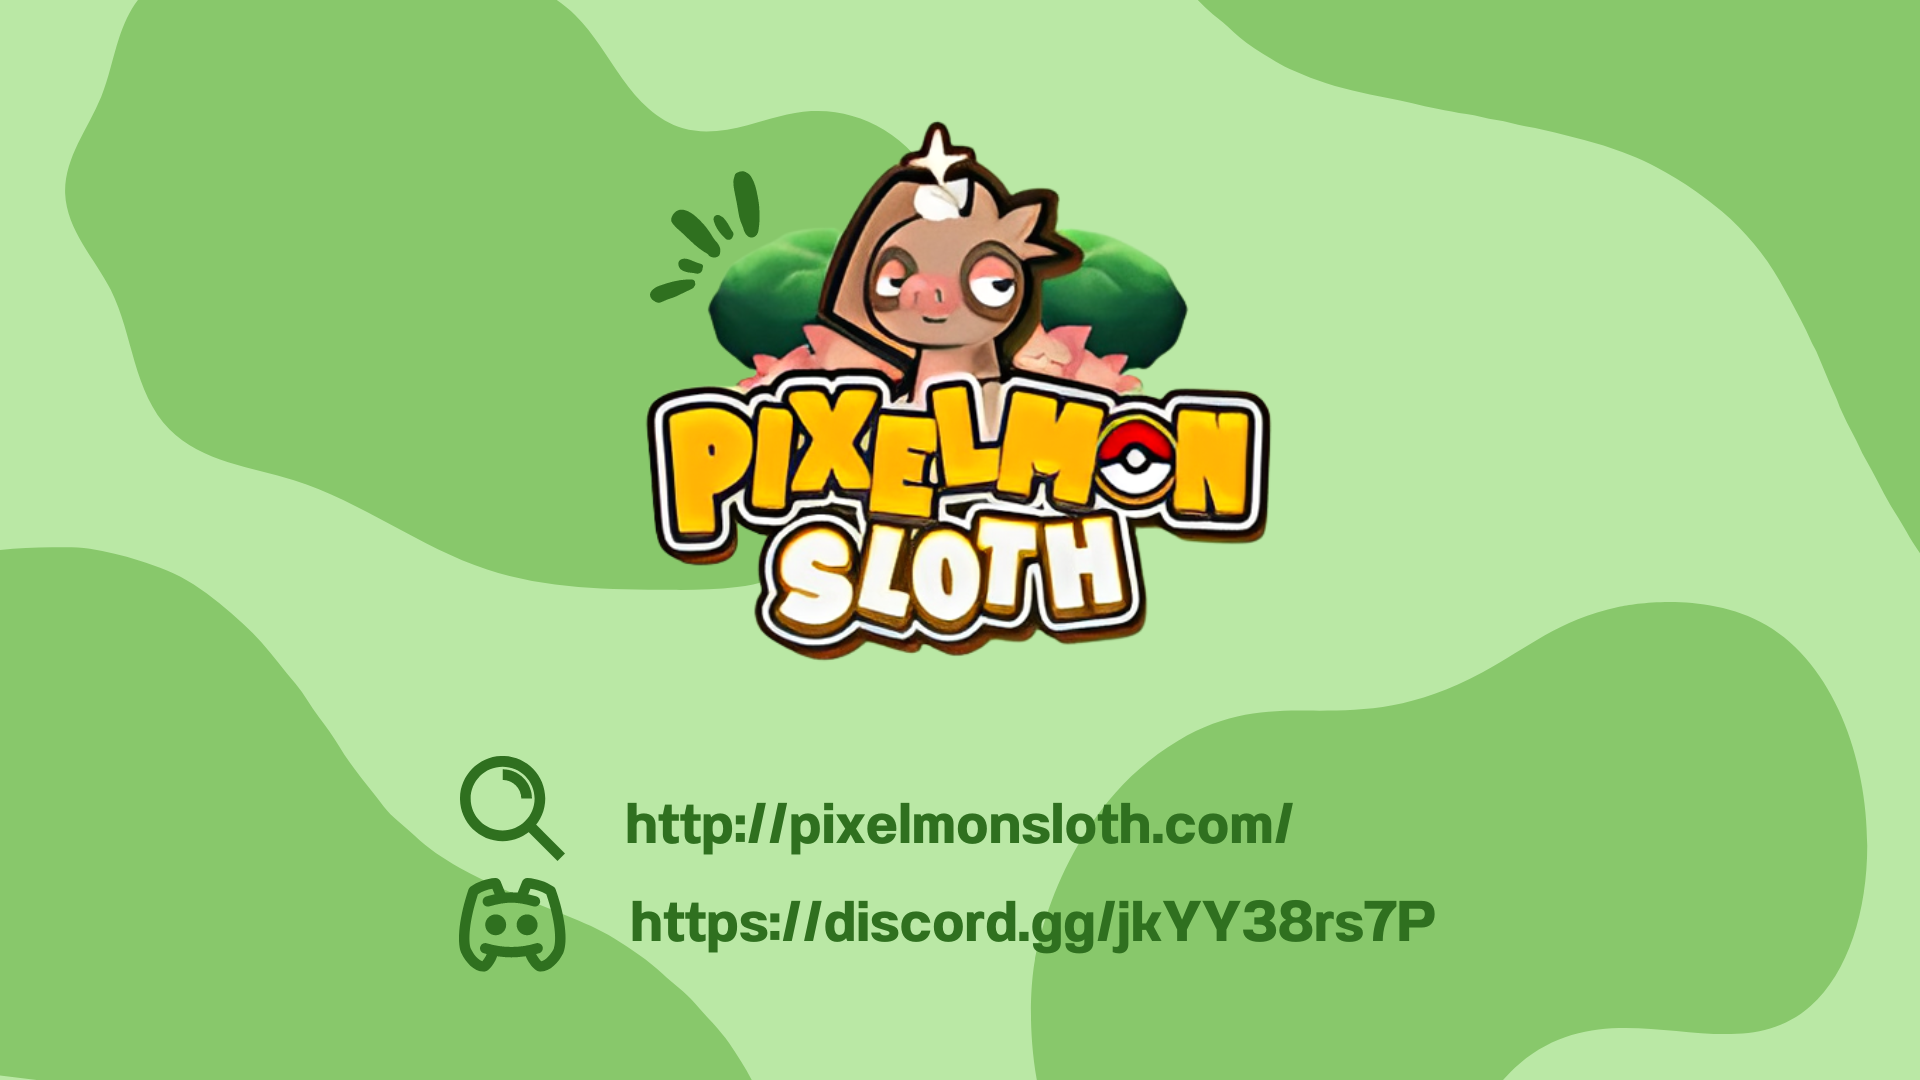 Pixelmon Sloth (2) (1).png